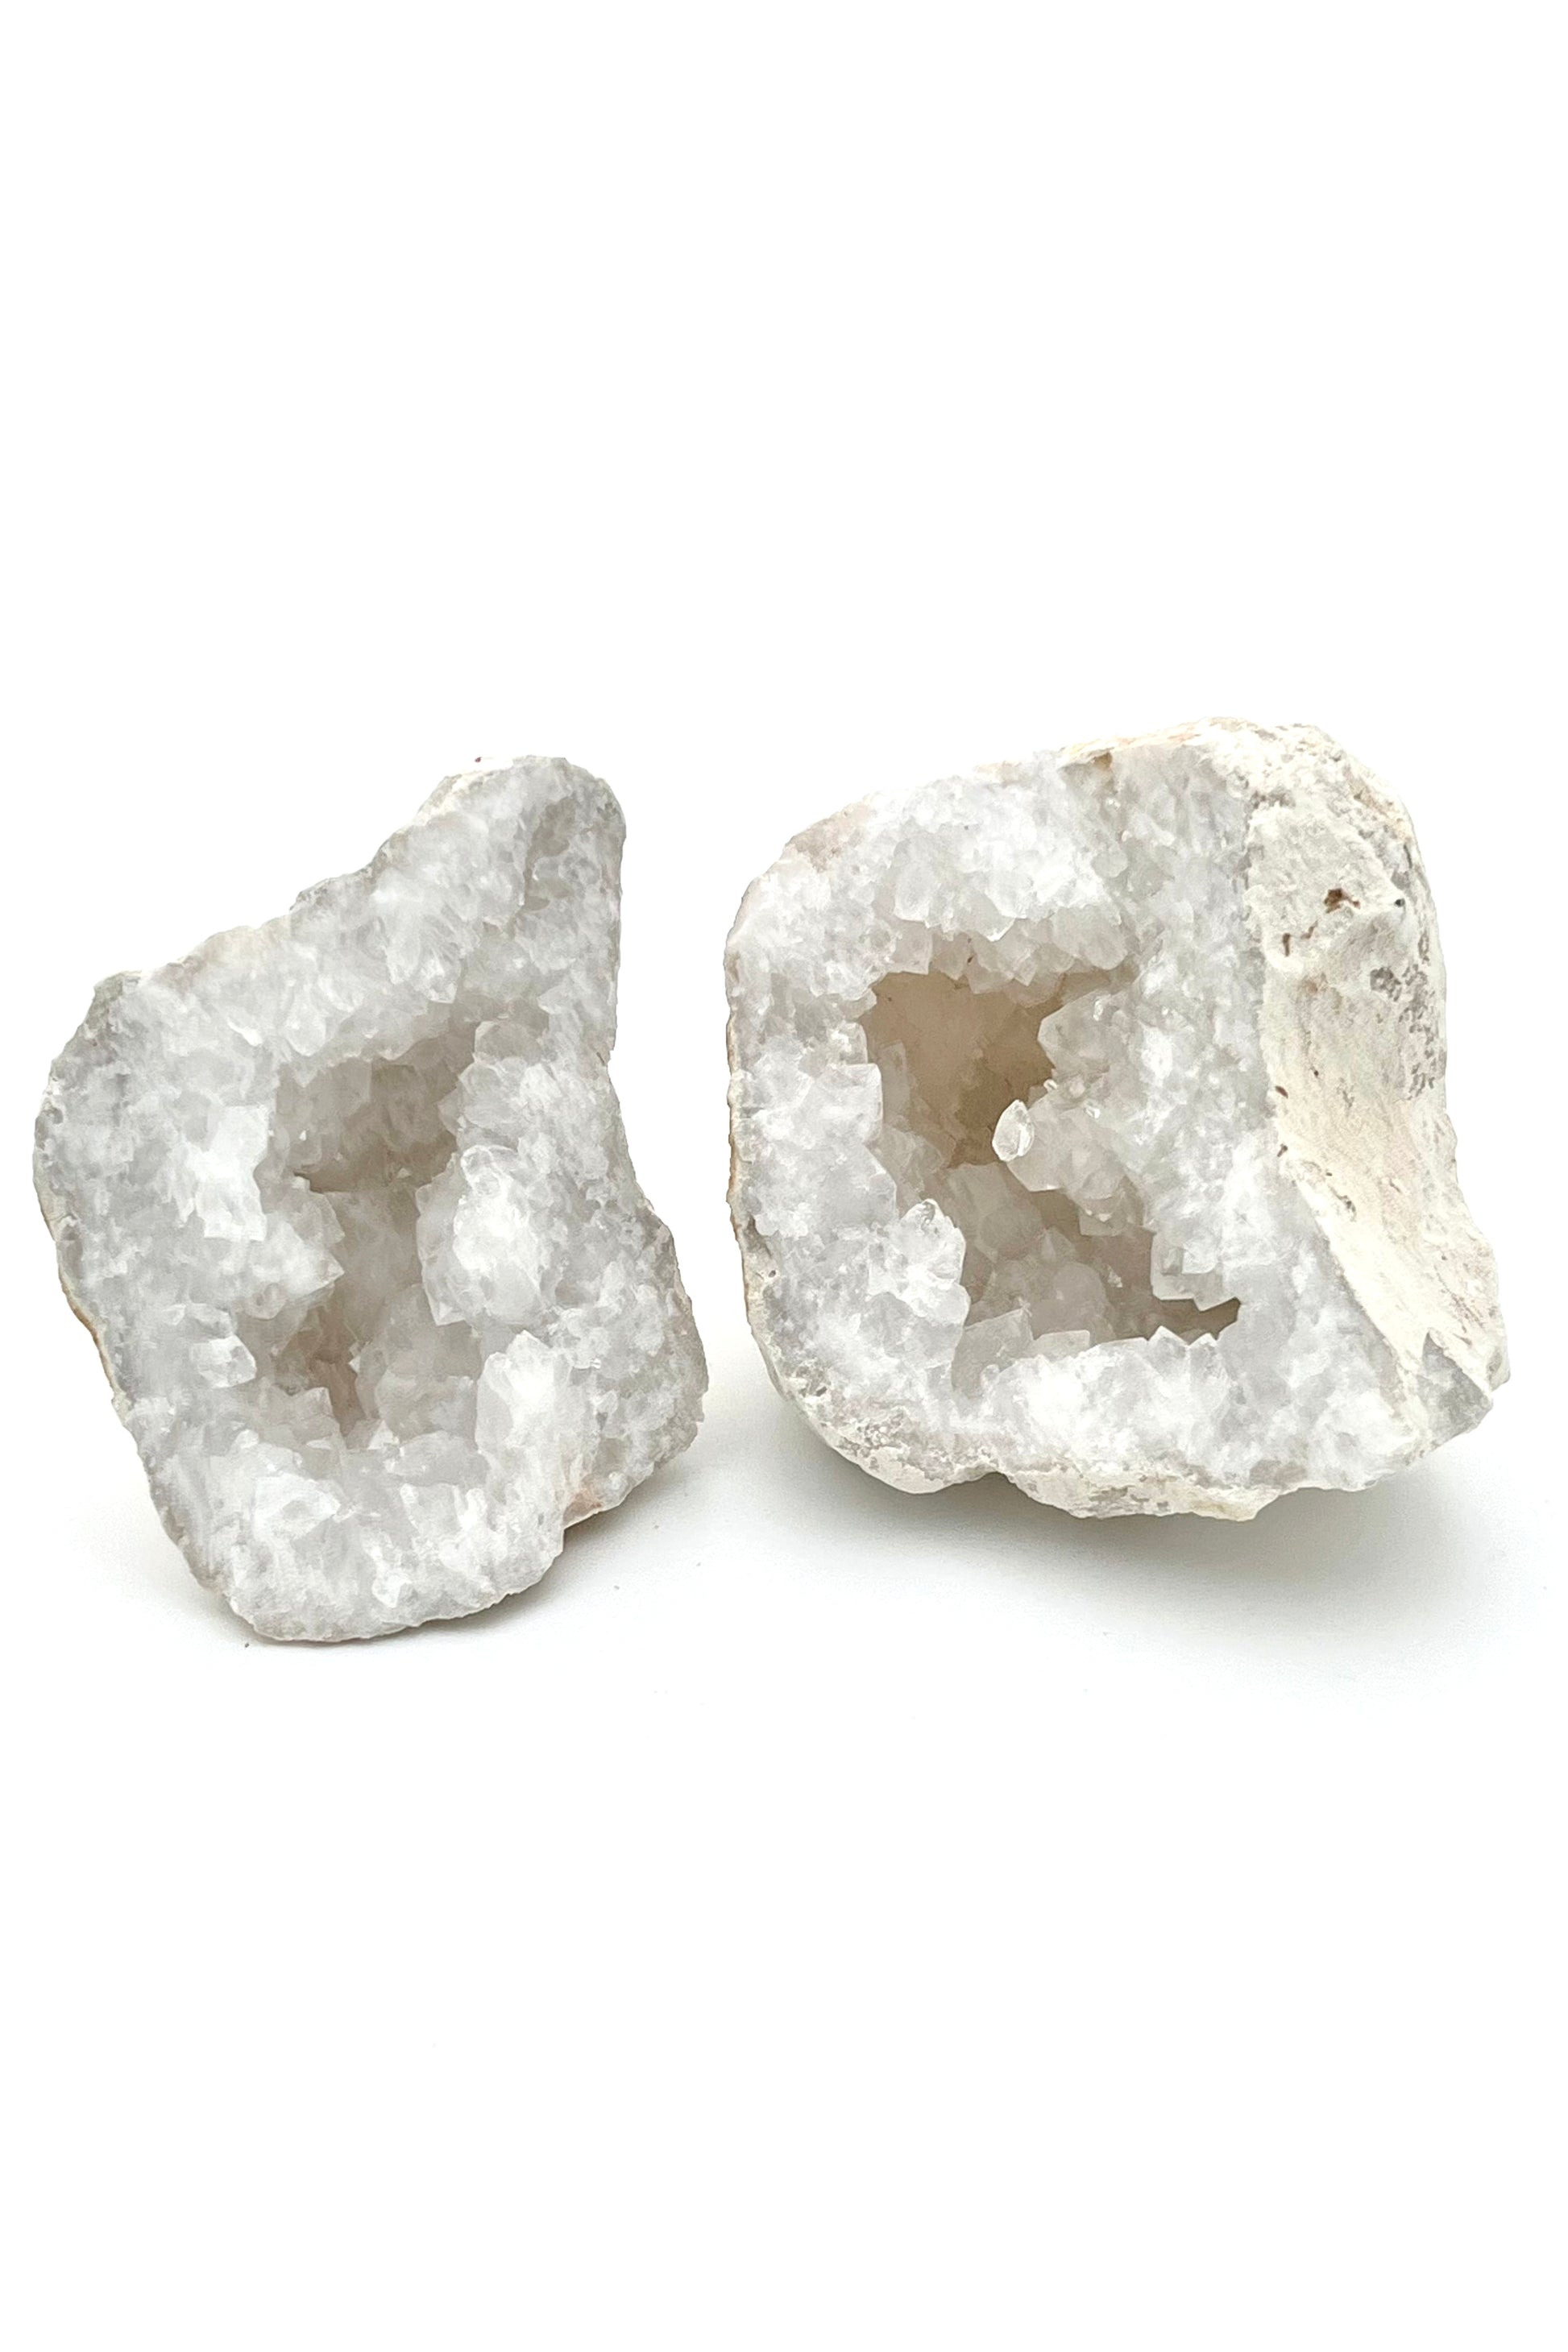 Geoda kamena strela, meditacija, zaščita, energija, zdravilni kamen, ščiti pred UV sevanji, najmočnejši kamen